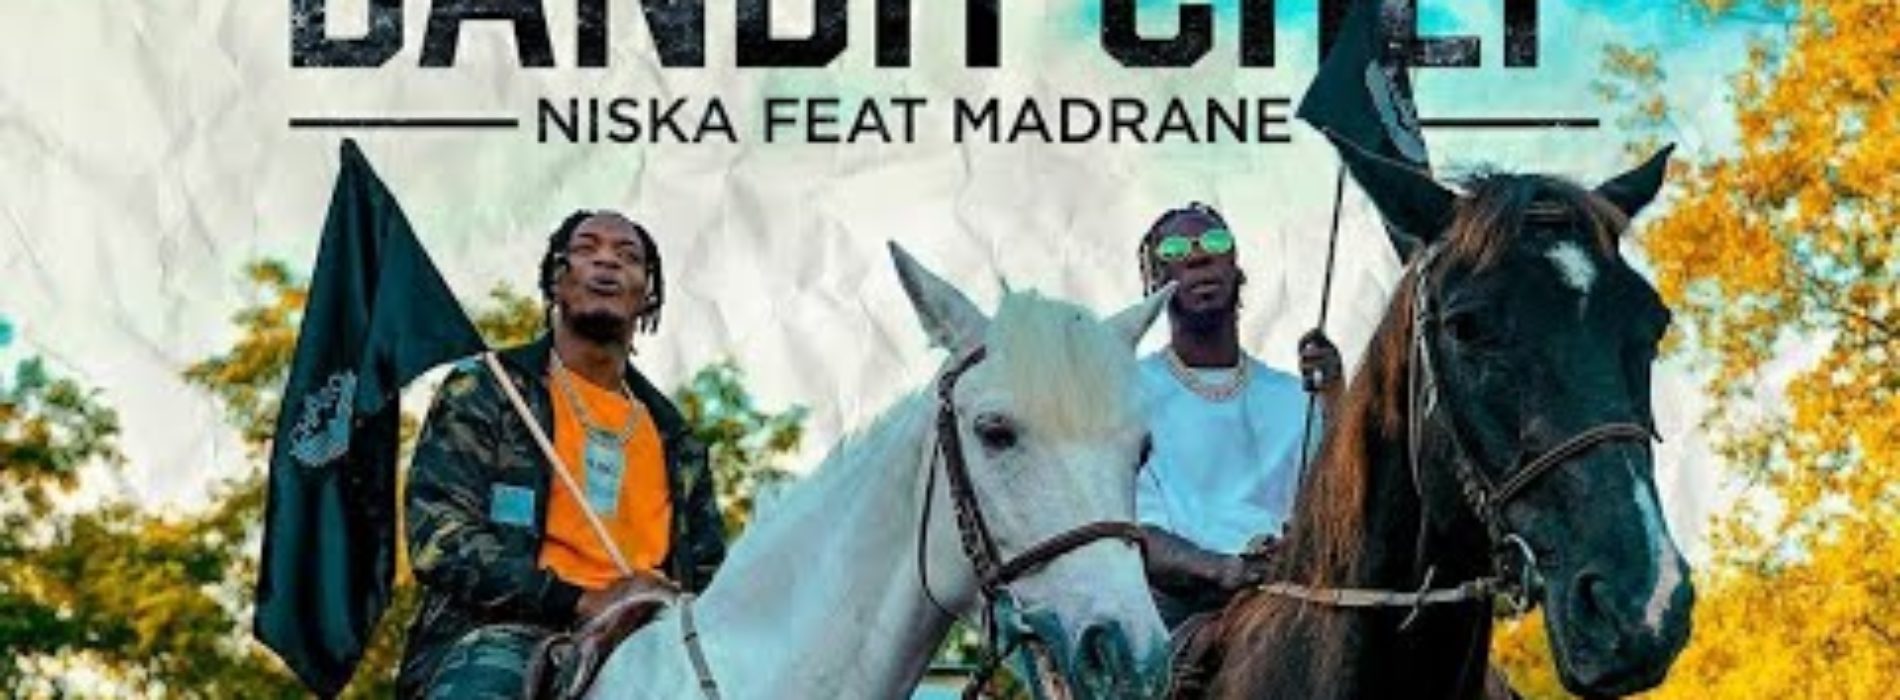 Niska – Bandit Chef ft. Madrane (Clip officiel) – Juillet 2020